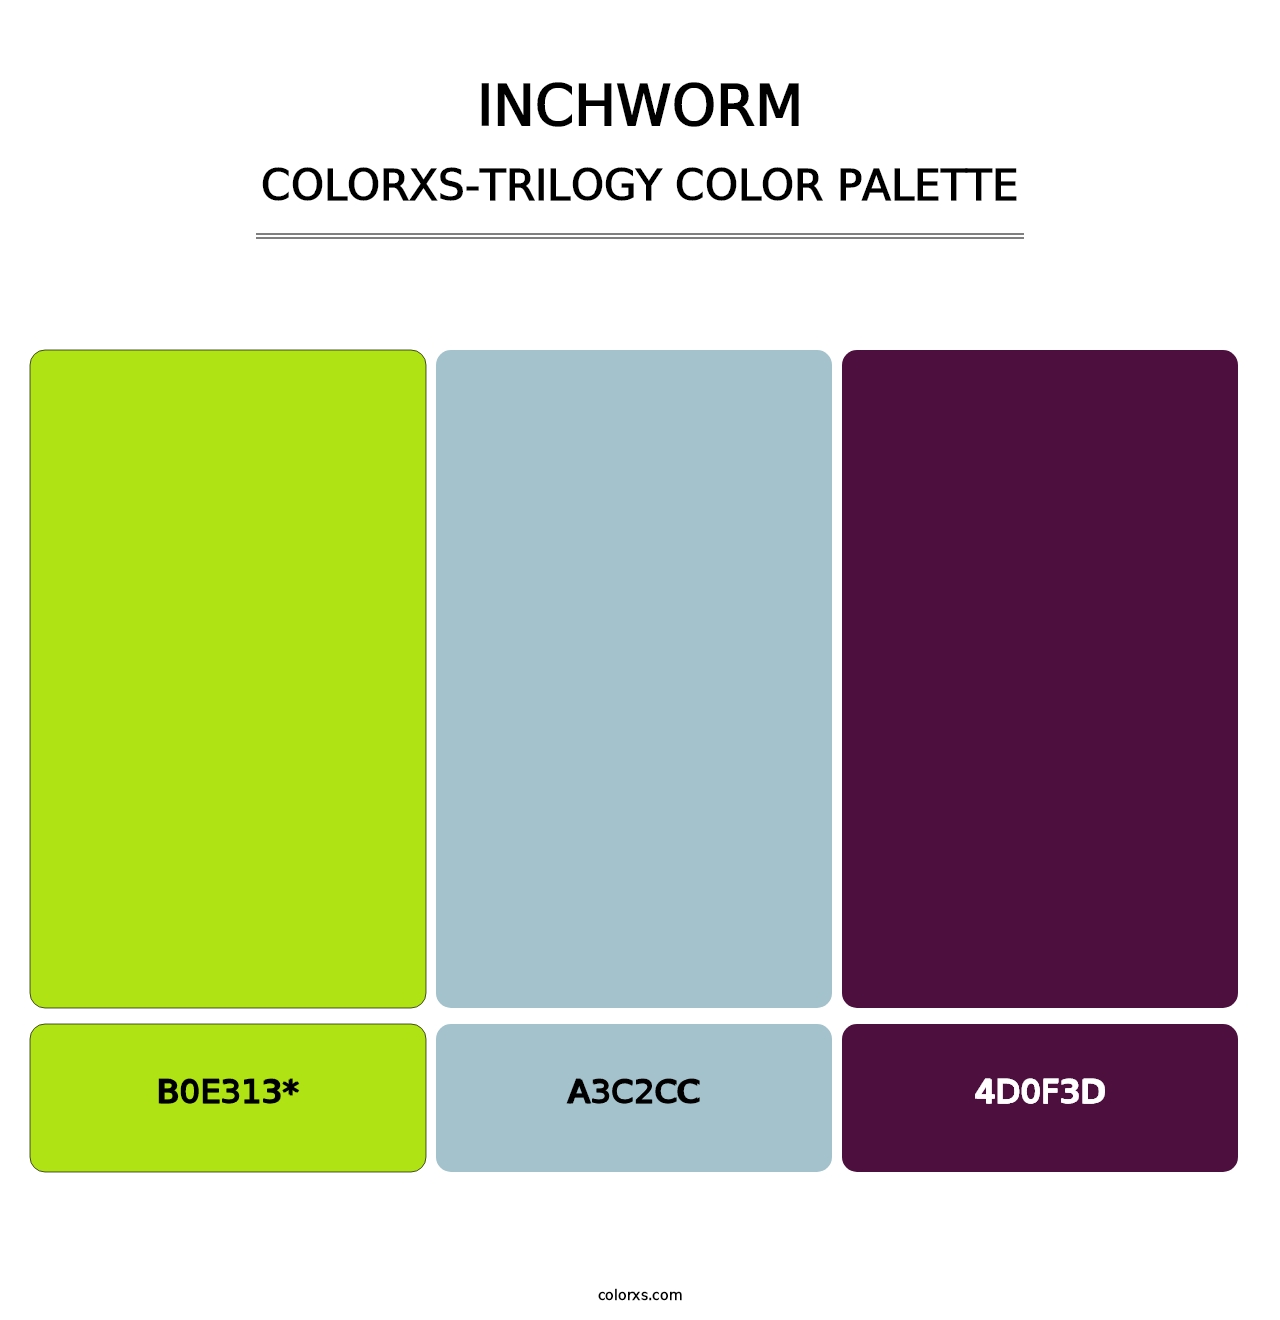 Inchworm - Colorxs Trilogy Palette